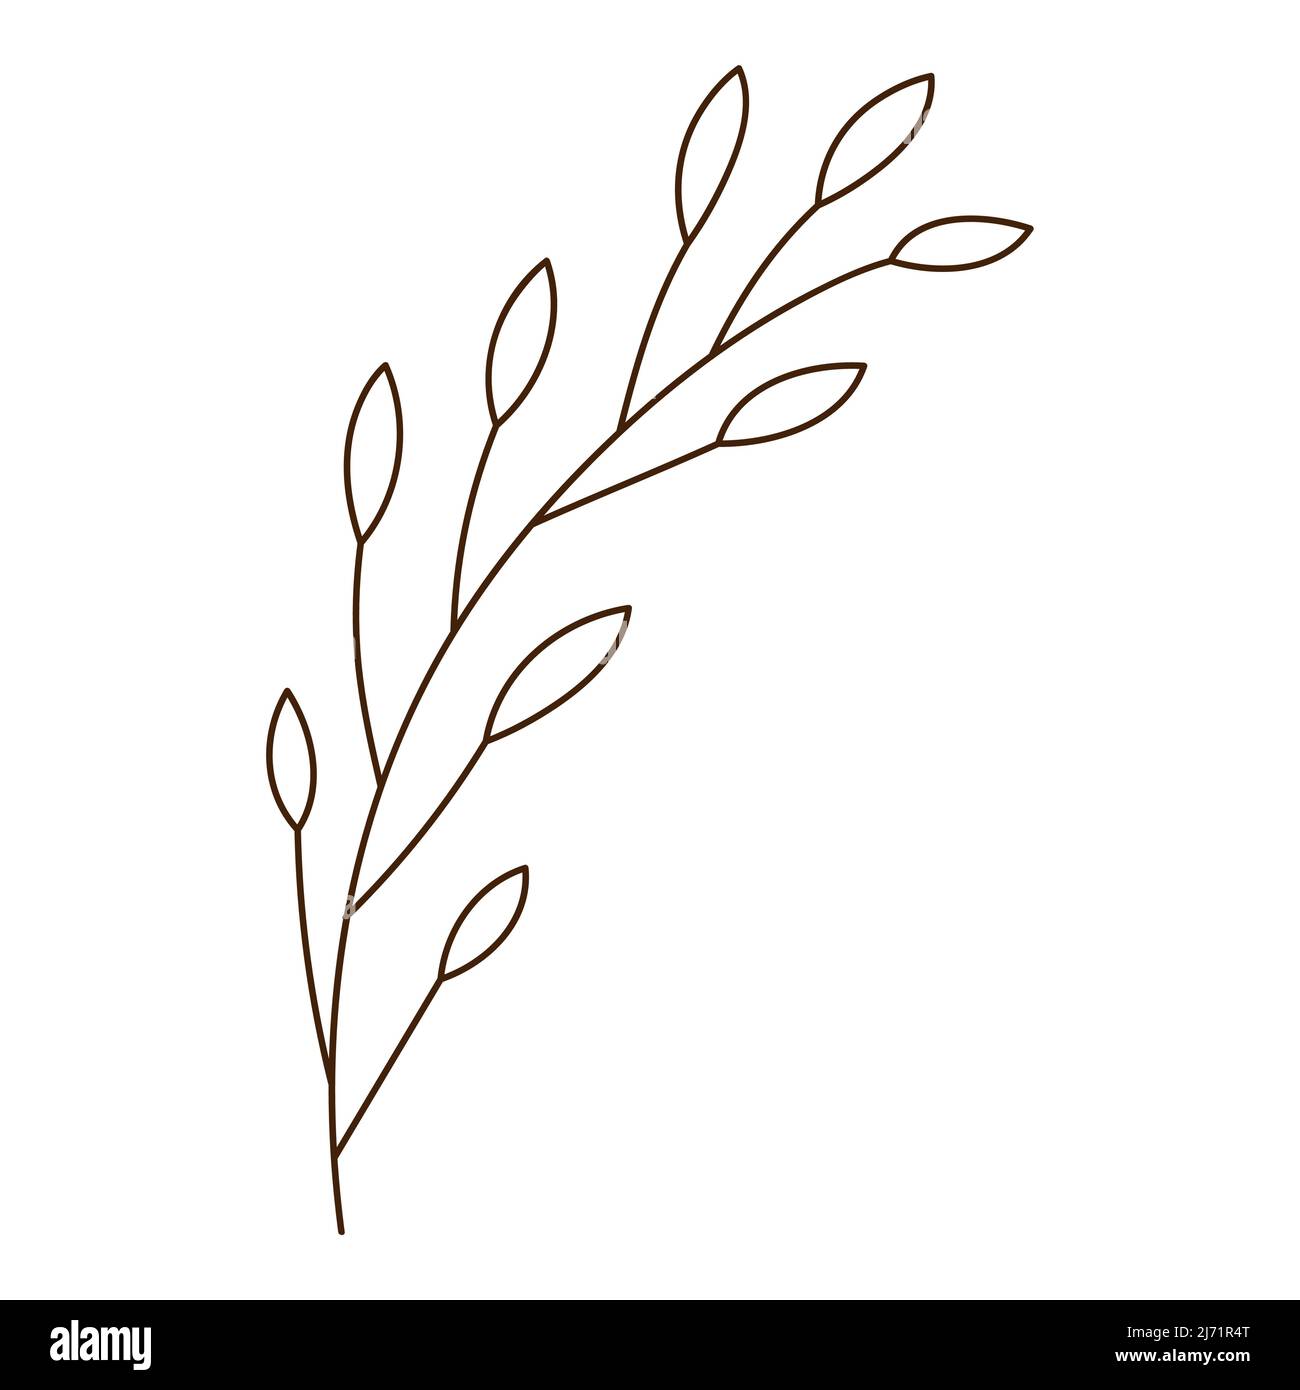 Abstrakter Zweig mit Blättern. Ein Grashalm. Herbstzeit. Botanisches, pflanzliches Designelement mit Umriss. Doodle, handgezeichnet. Flaches Design. Schwarz-weiß V Stock Vektor